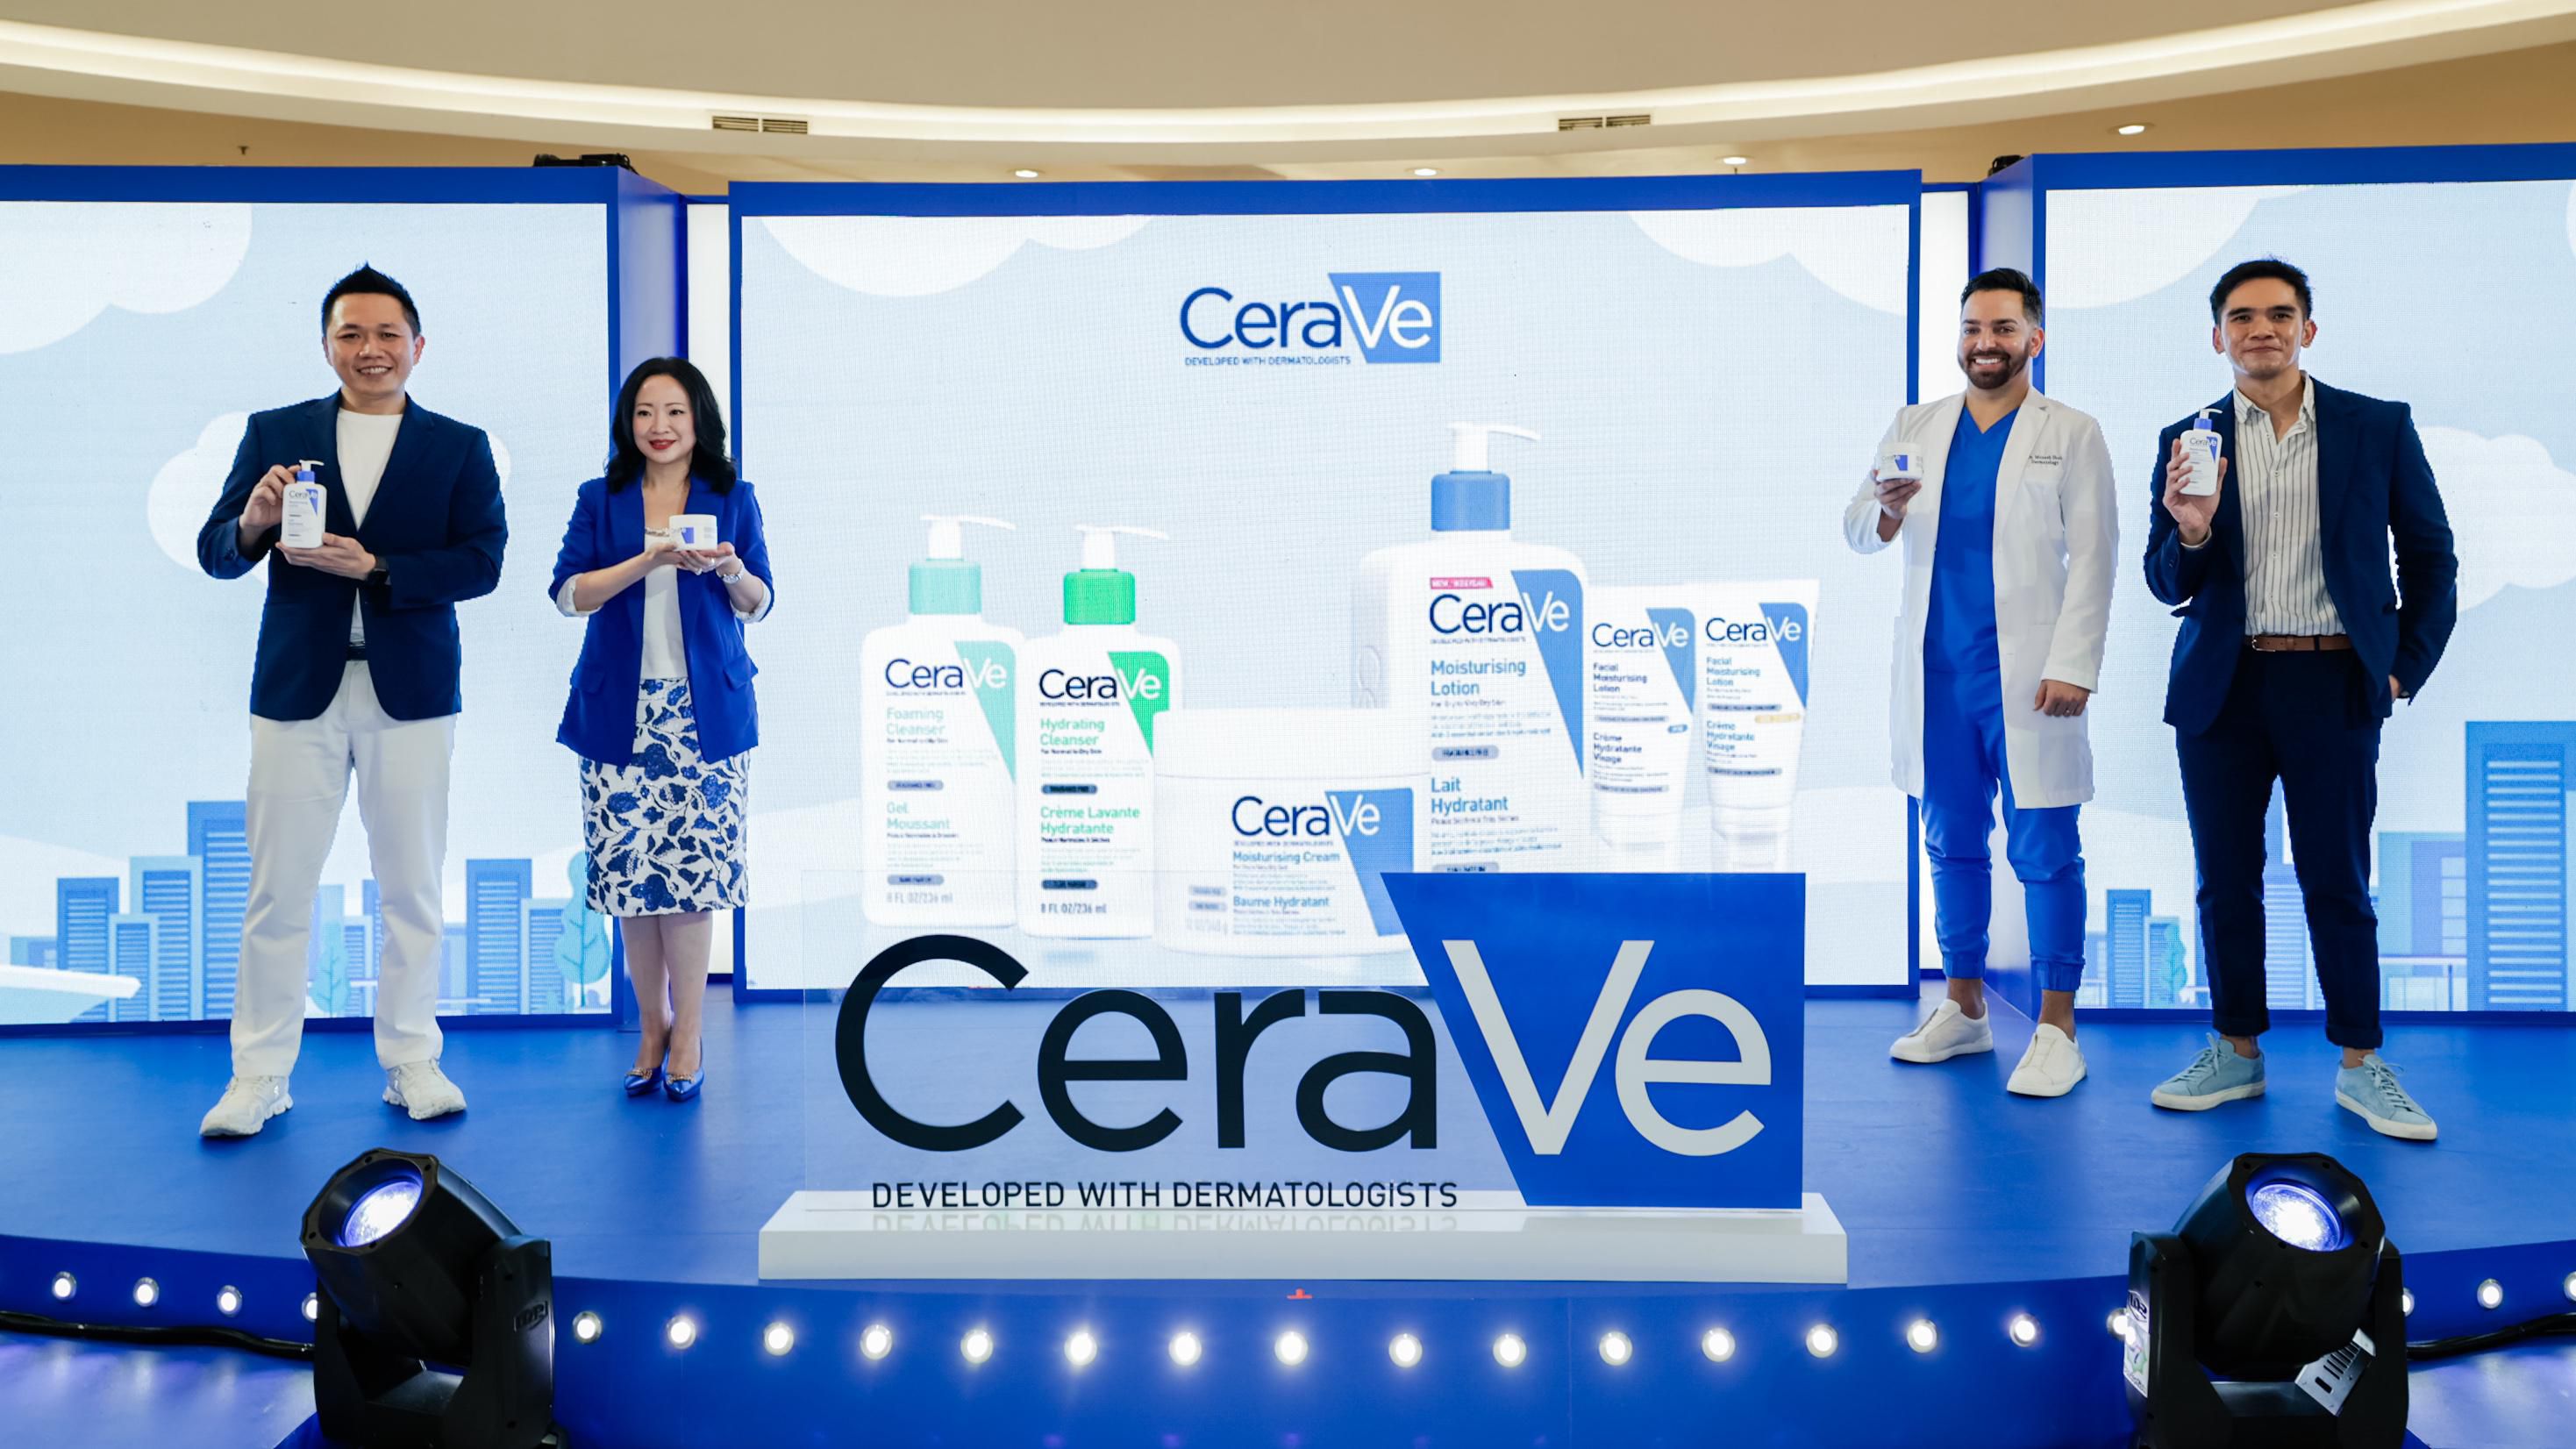 Cerave L’Oréal Dermatological Beauty